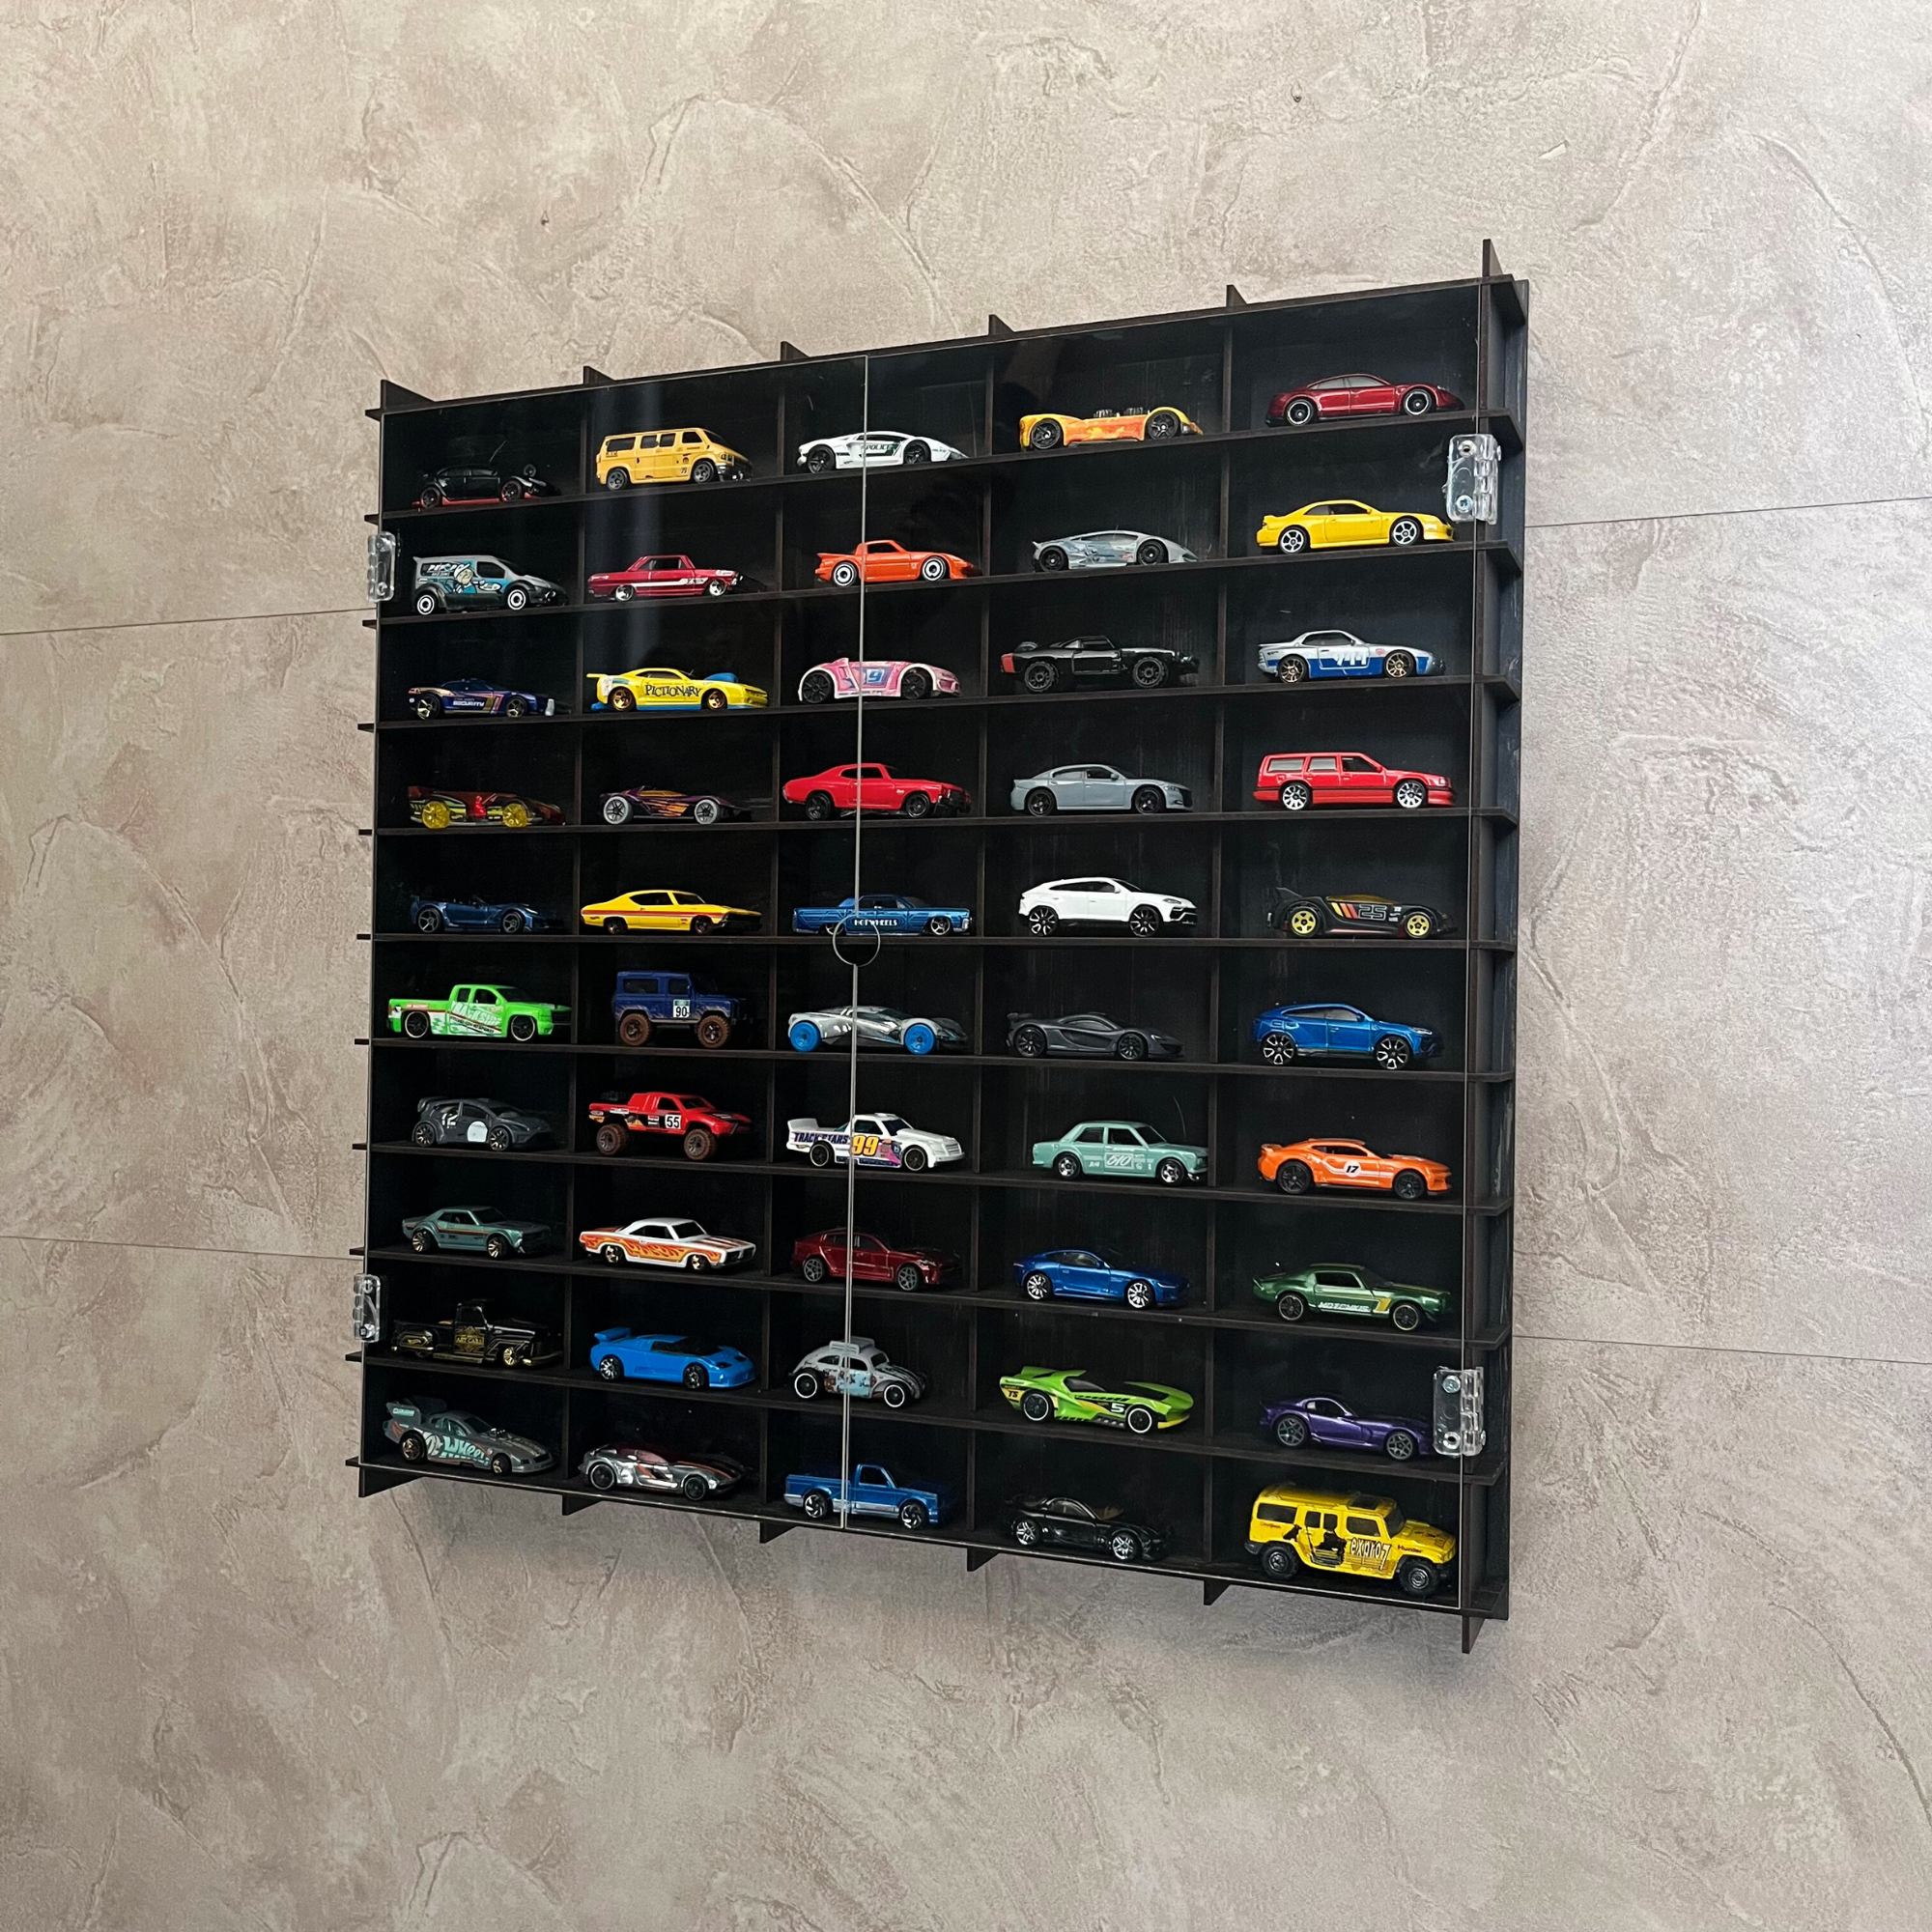 WALNUT Toy Car Display Case